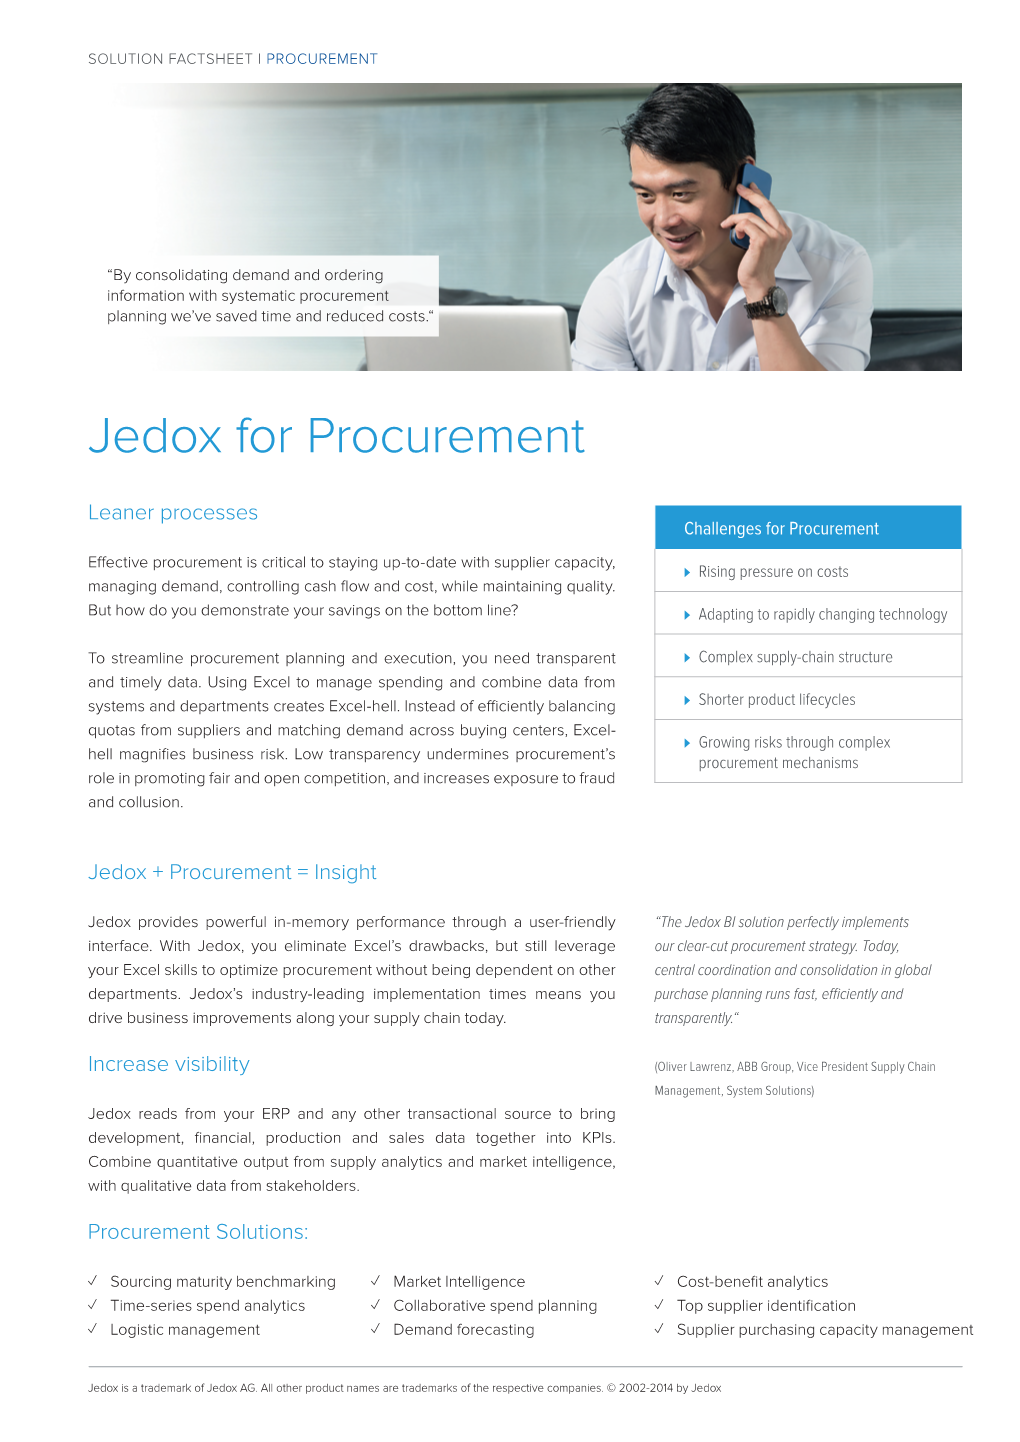 Jedox for Procurement